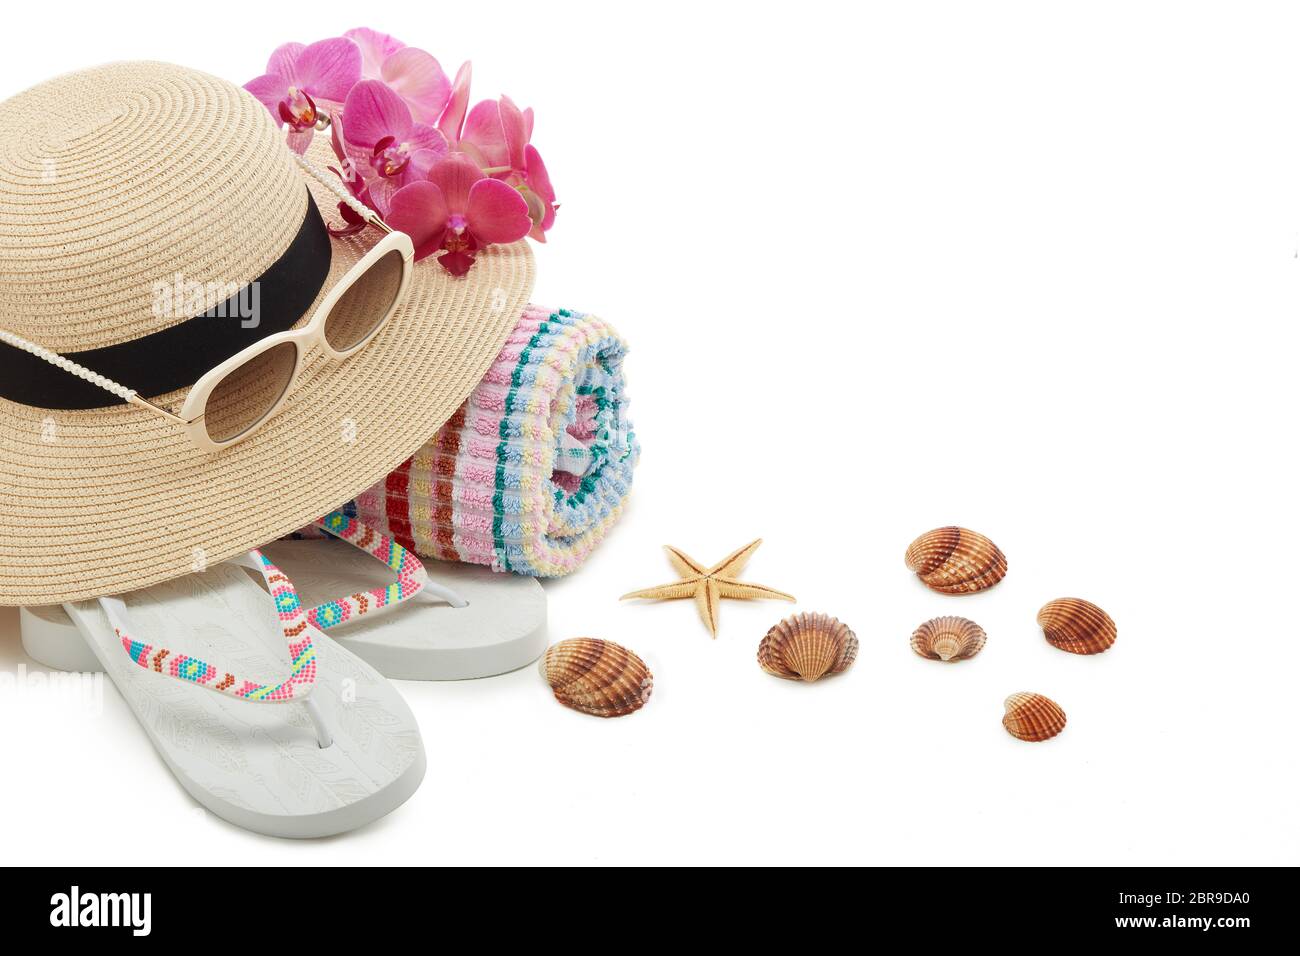 Accessori spiaggia: Infradito, cappello di paglia, occhiali da sole, asciugamano isolato su sfondo bianco con spazio per la copia. Concetto di vacanza e viaggio in mare. Estate b Foto Stock